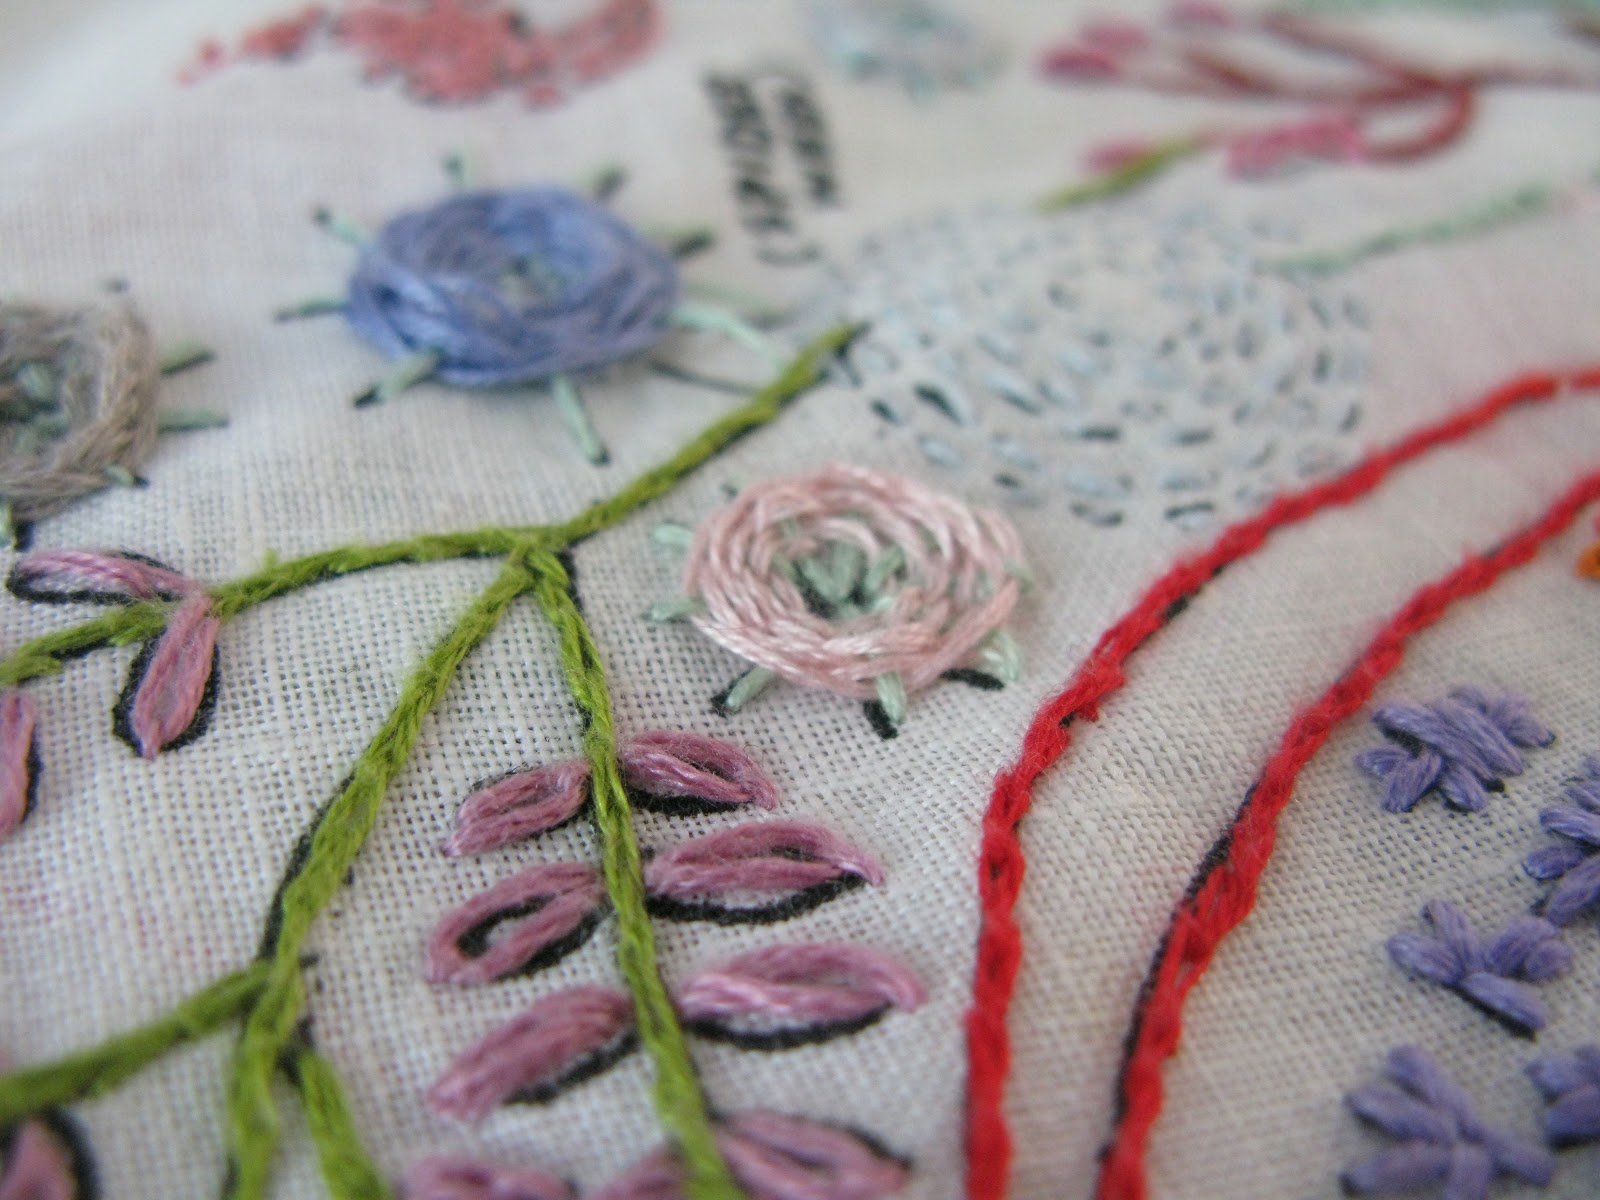 Sew Nancy: drop cloth stitch sampler